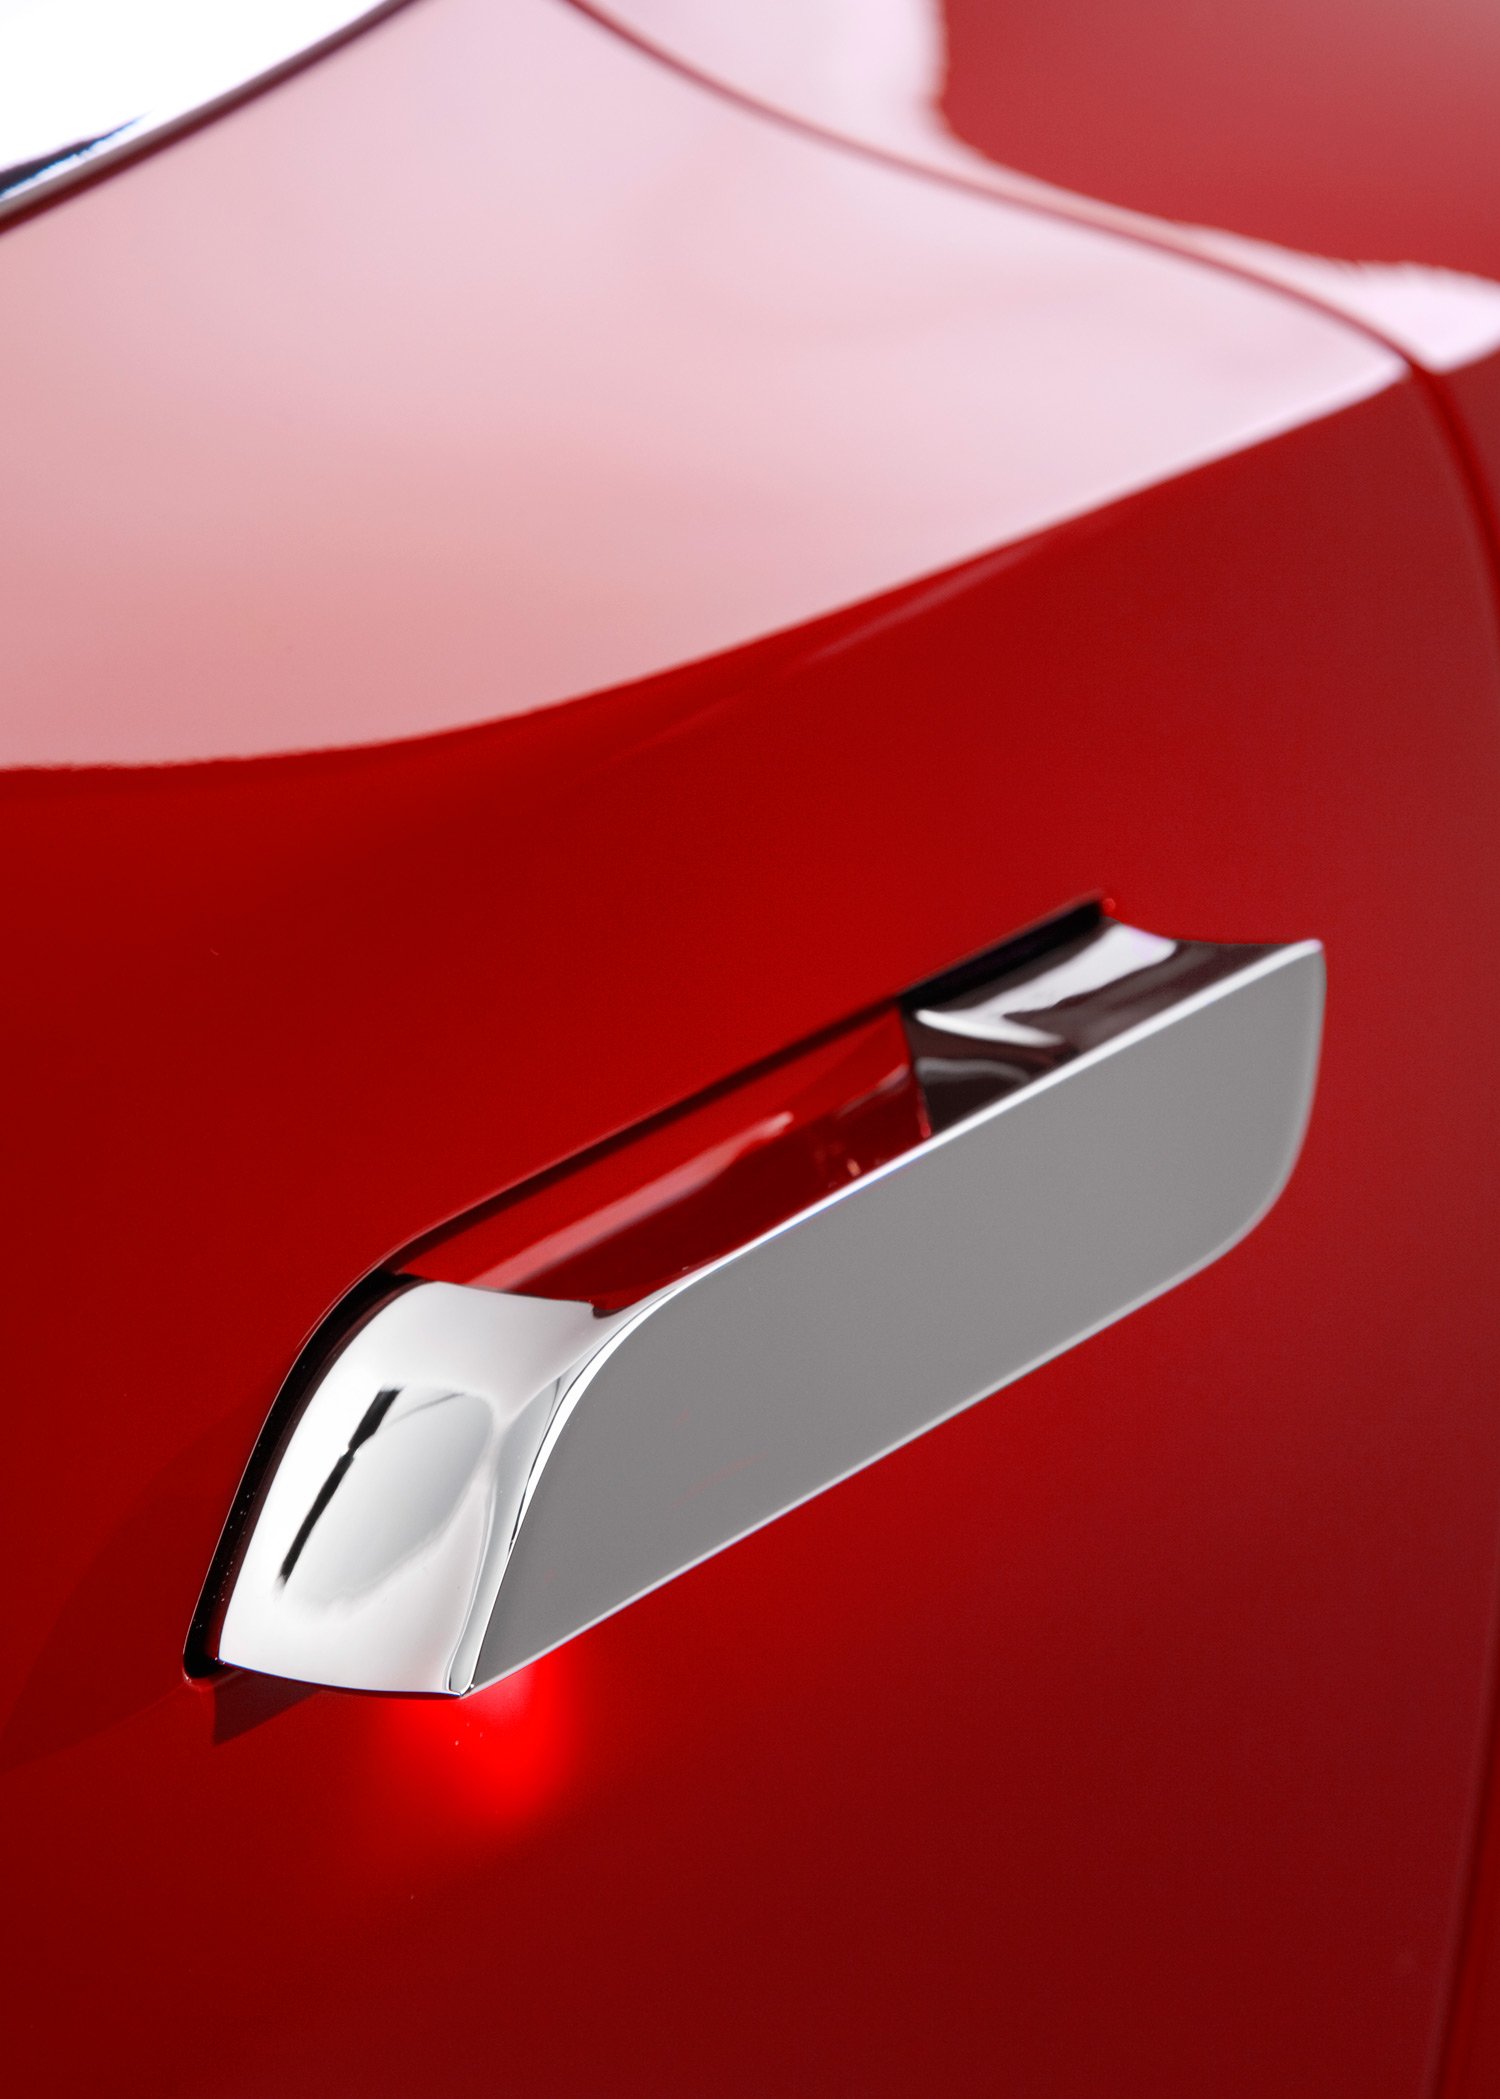 2013-Tesla-Model-S-door-handle.jpg